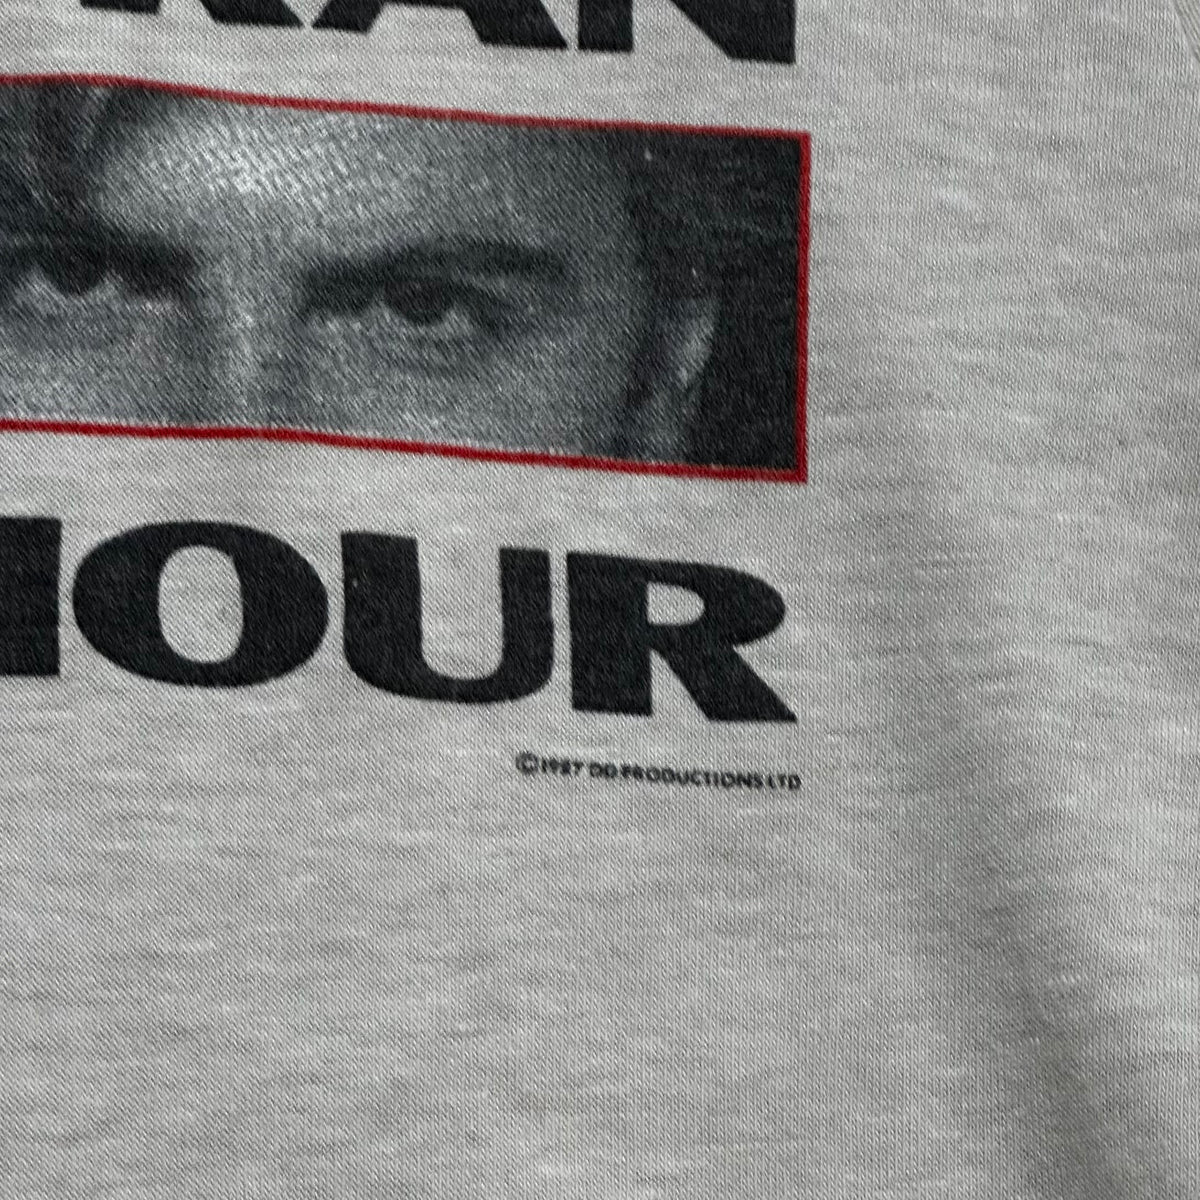 Vintage 1987 Duran Duran Stange Behaviour t-shirt